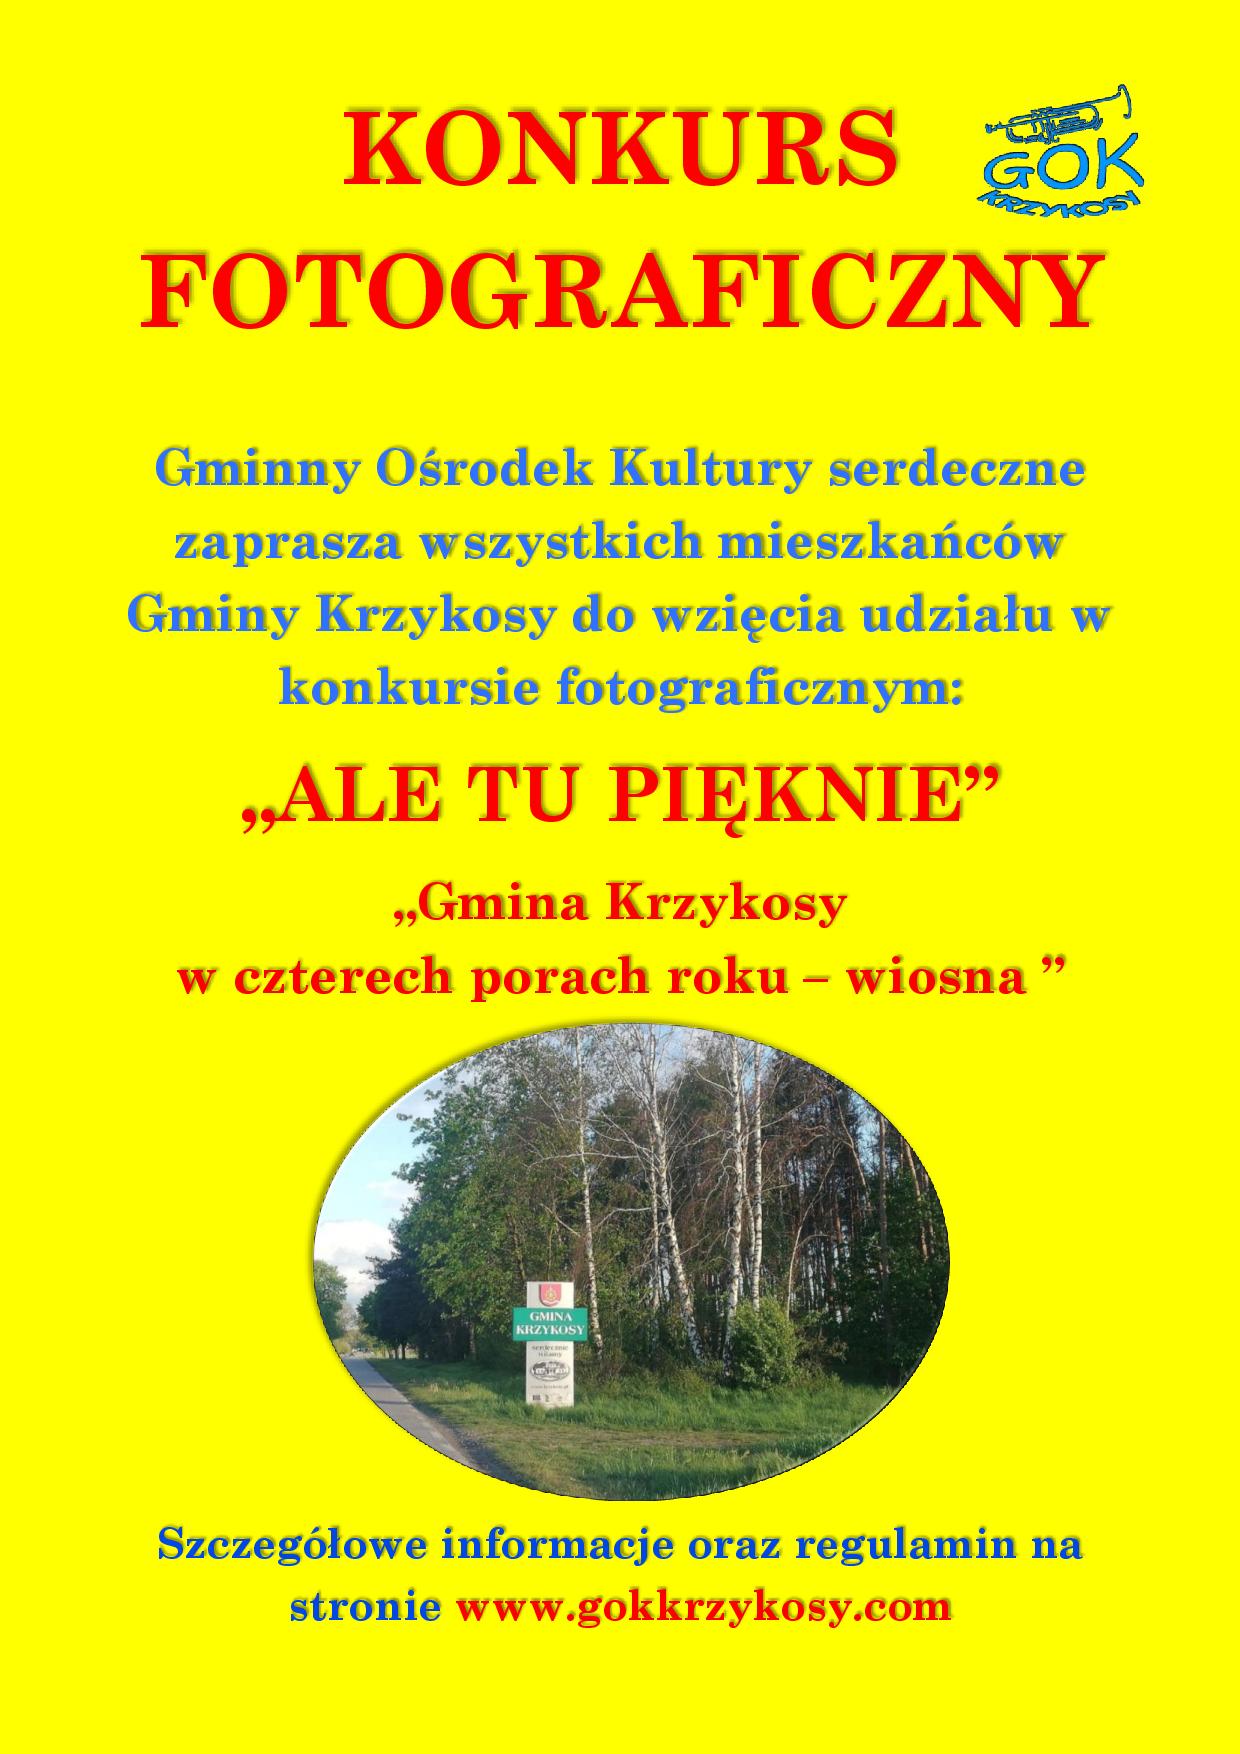 Plakat informacyjny o konkursie fotograficznym